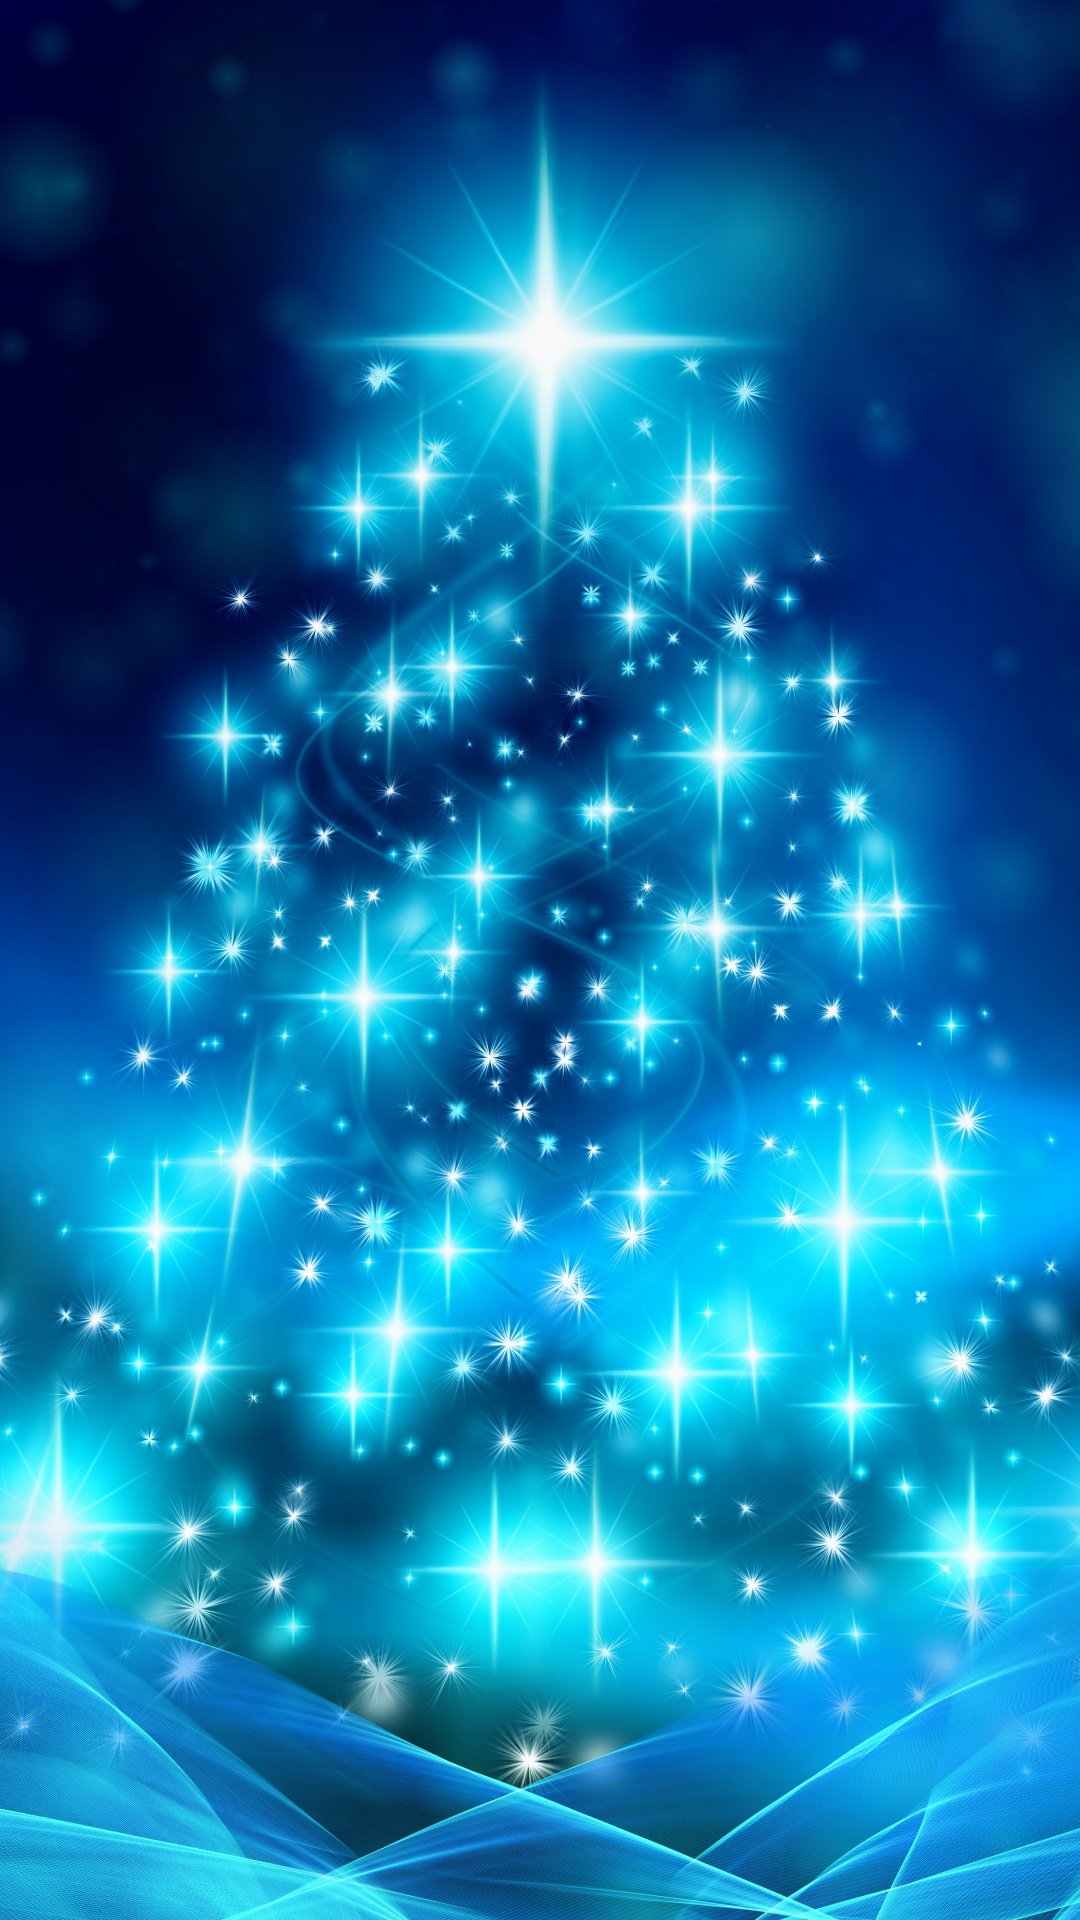 El Día De Navidad, Decoración de la Navidad, Azul, la Víspera de Navidad, Animación. Wallpaper in 1080x1920 Resolution